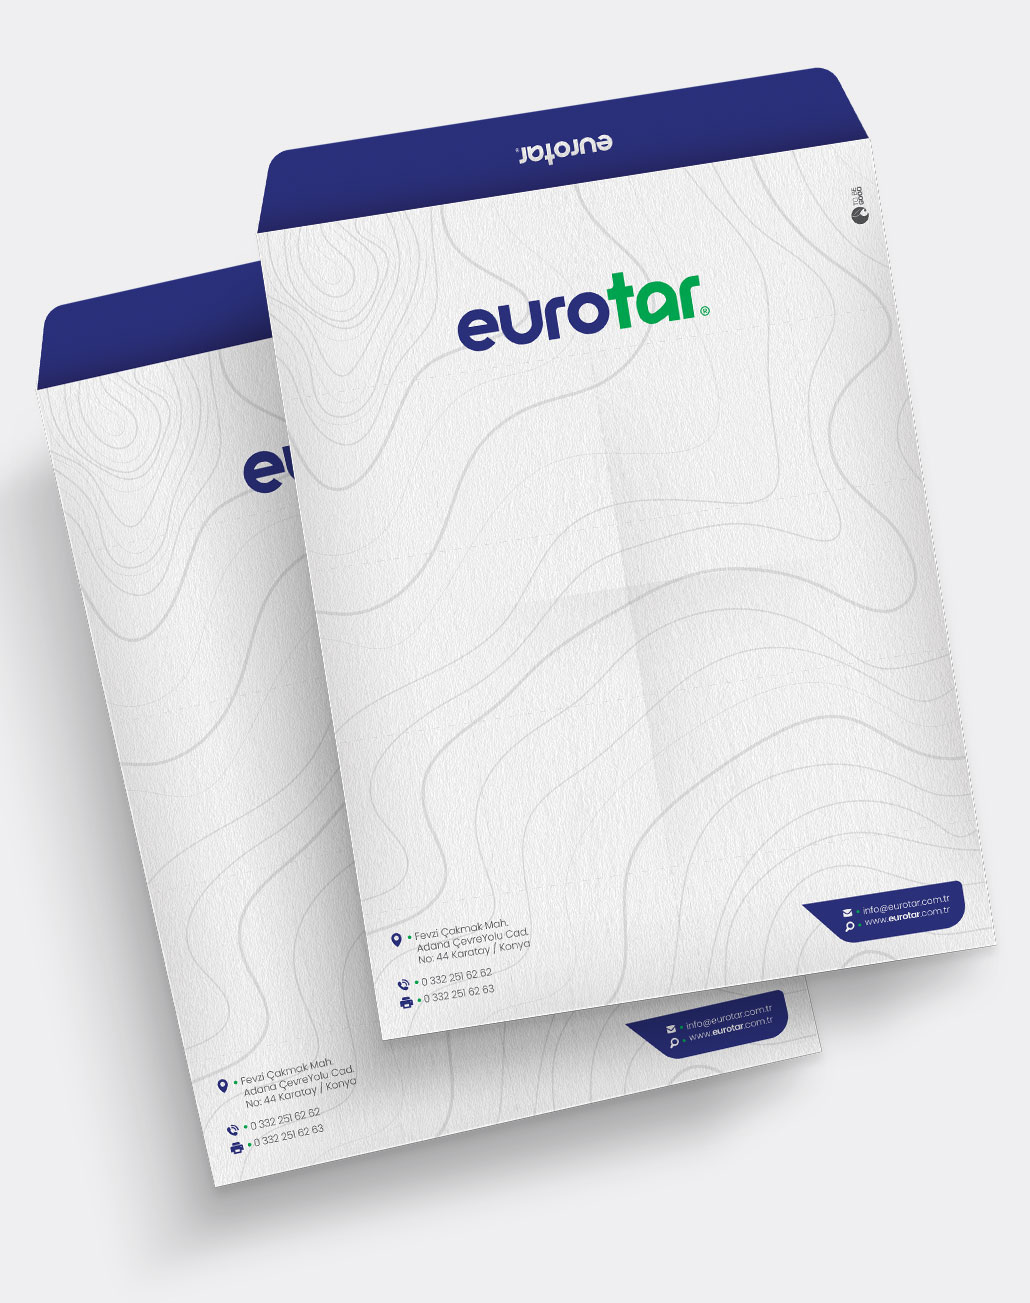 Eurotar Kurumsal Kimlik / Cepli Dosya Tasarımı